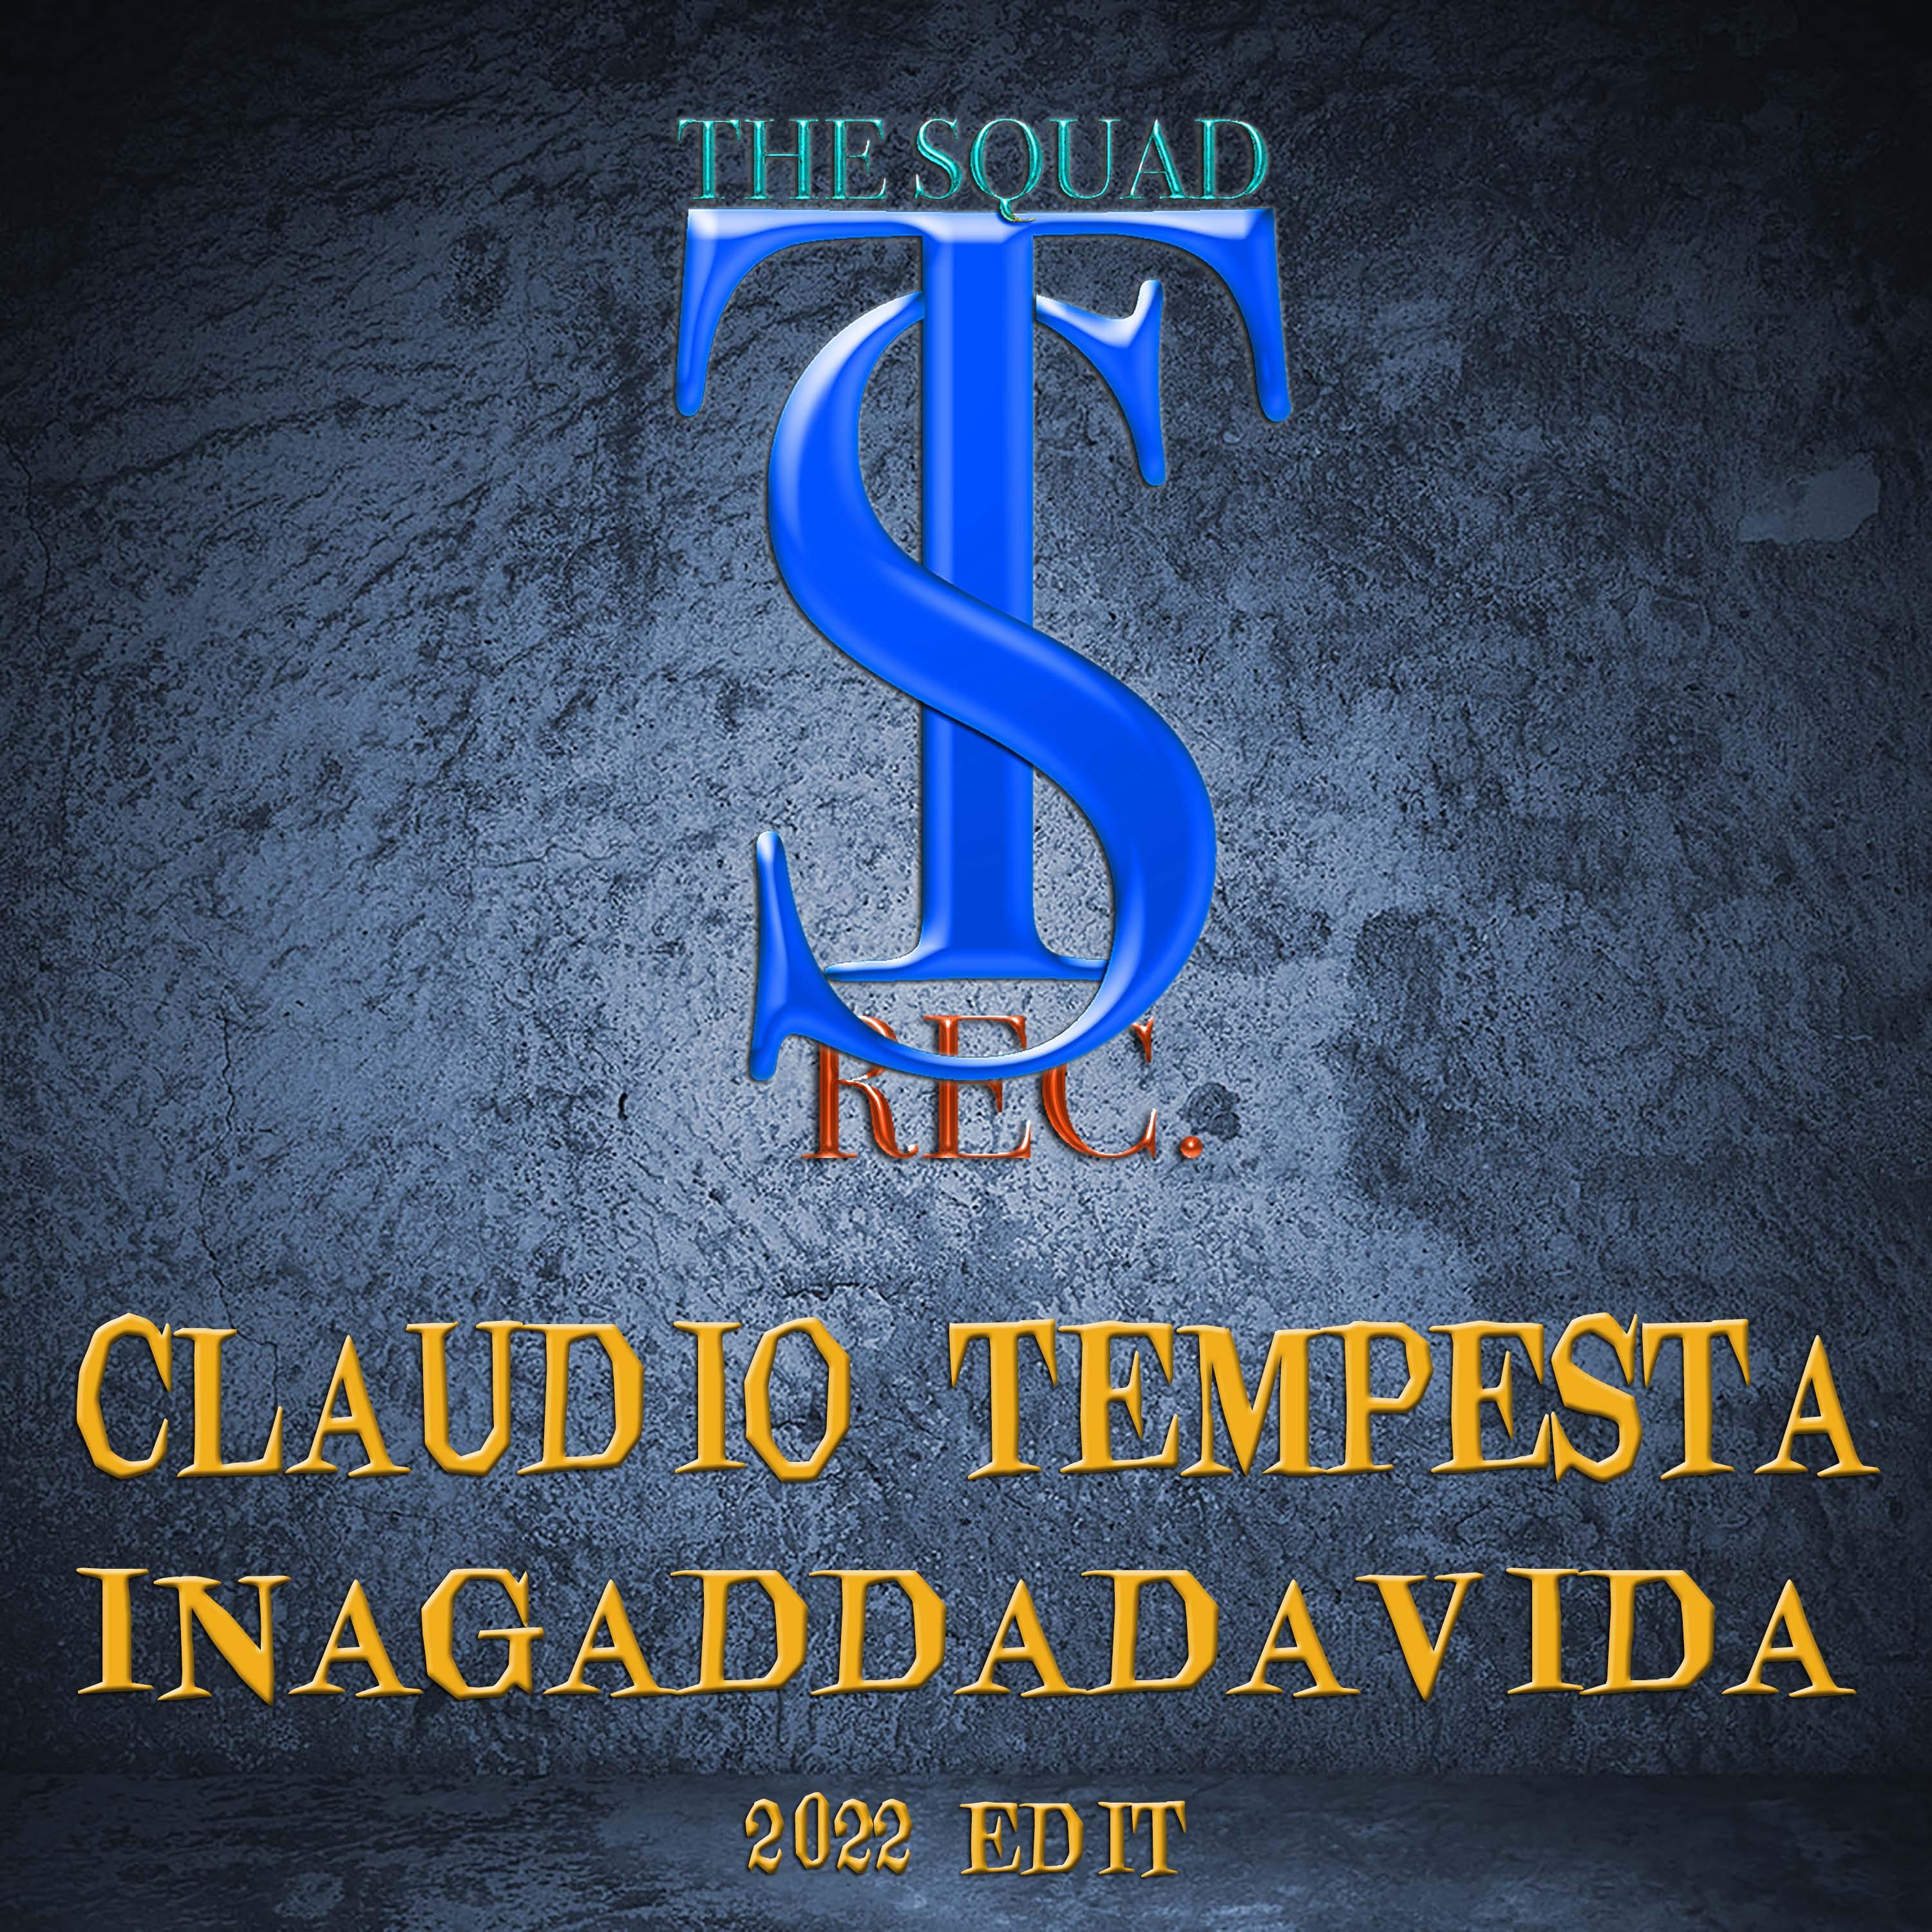 Claudio Tempesta - INAGADDADAVIDA (2022 EDIT)